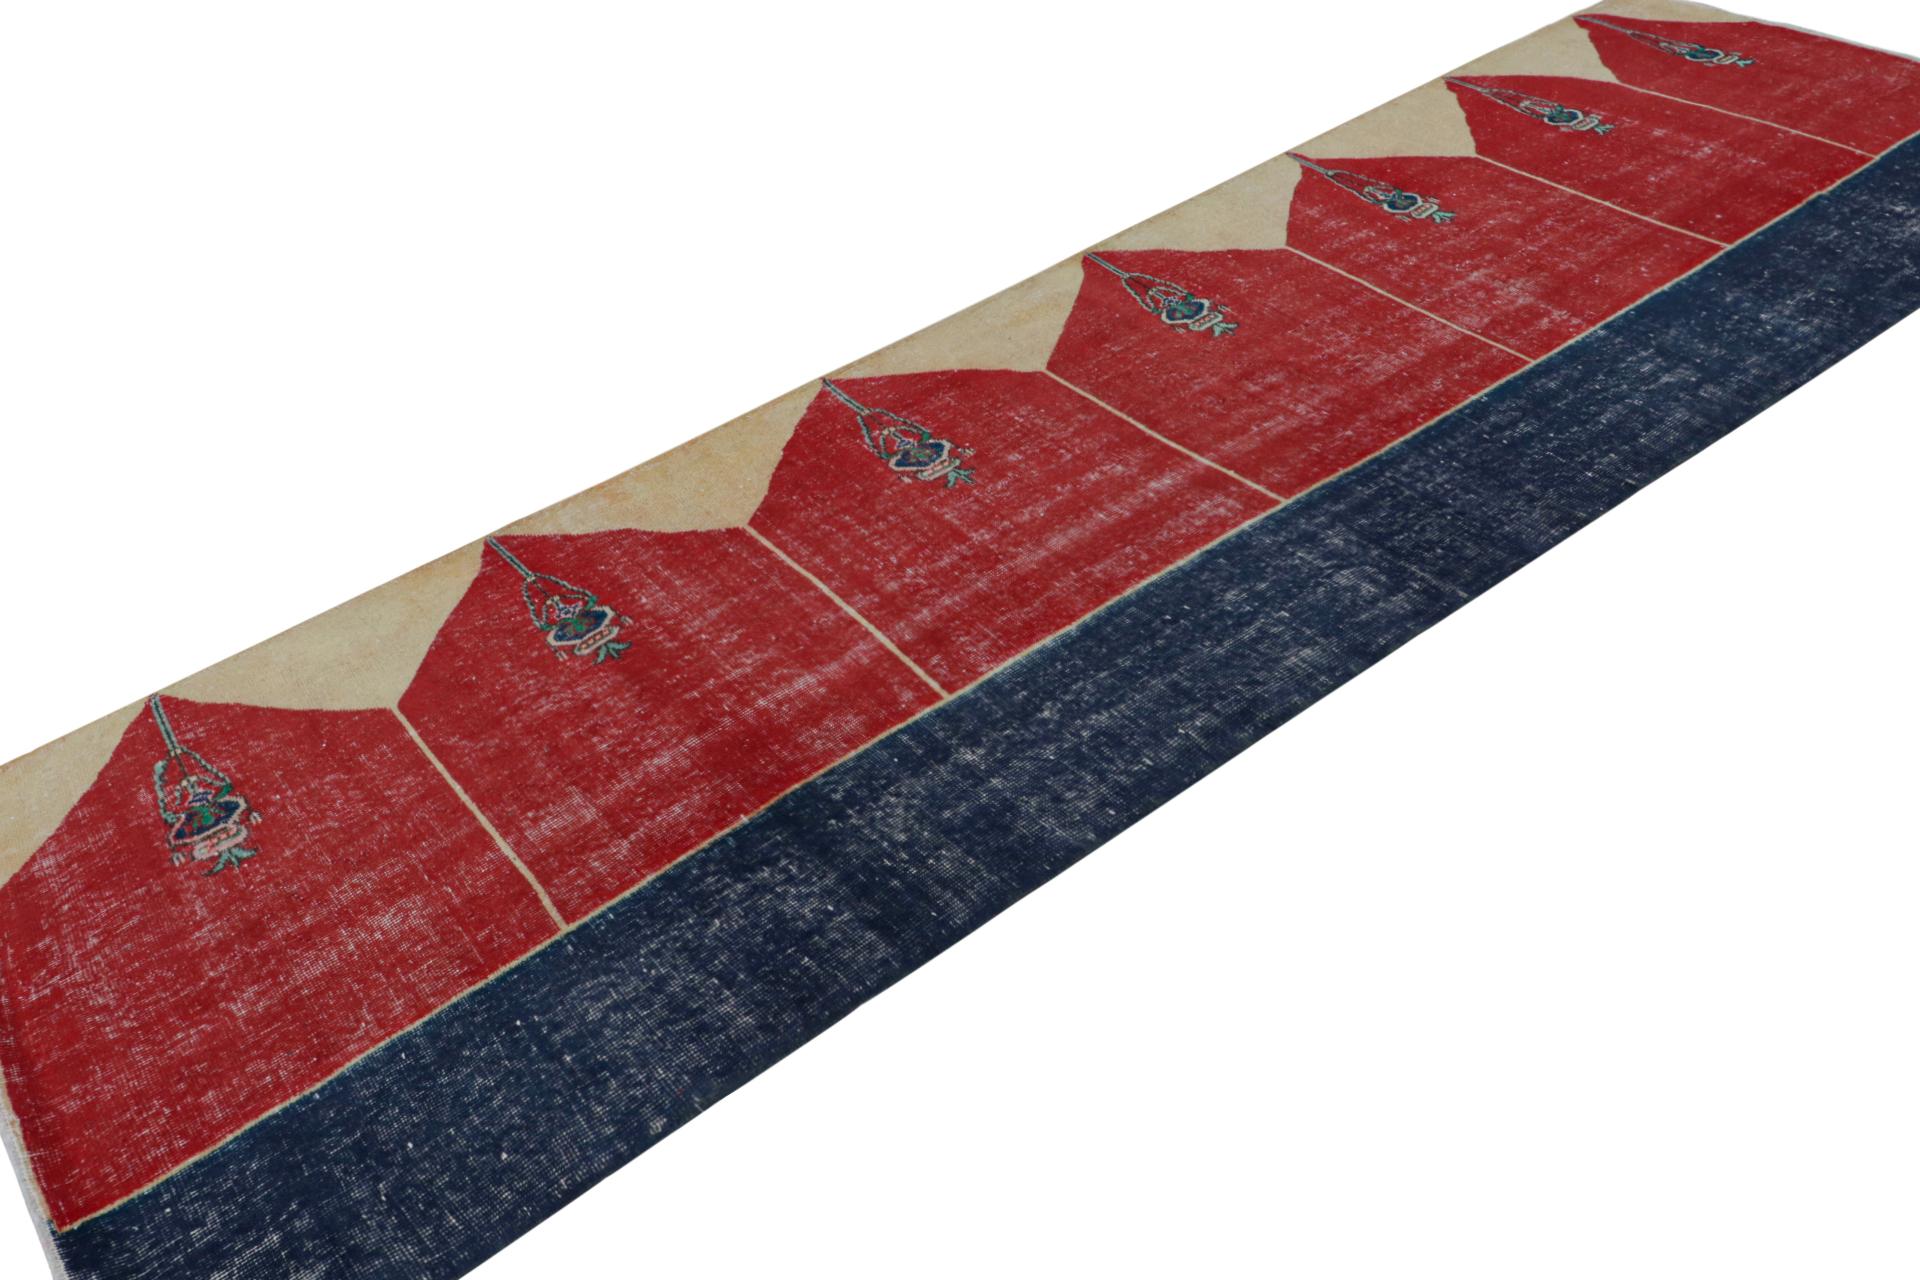 Handgeknüpfter türkischer Läufer 4x14 aus Wolle, ca. 1950-1960 - der neueste Eintrag in der Vintage-Auswahl von Rug & Kilim.

Über das Design:

Das Design ist von Saf-Teppichen inspiriert - eine Art Gebetsteppich, der für diesen Look bekannt ist.